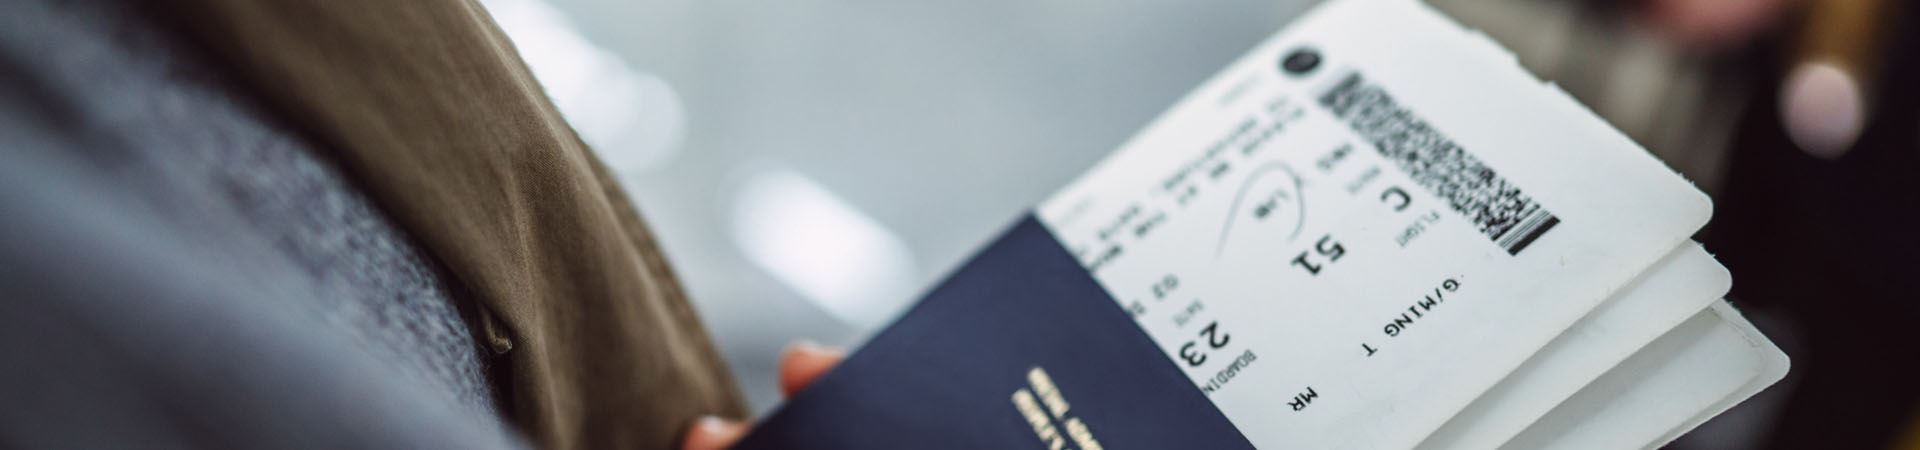 Fotografía de primer plano de una mano que sostiene tres pasaportes azul oscuro. Dentro de cada pasaporte hay una tarjeta de embarque.